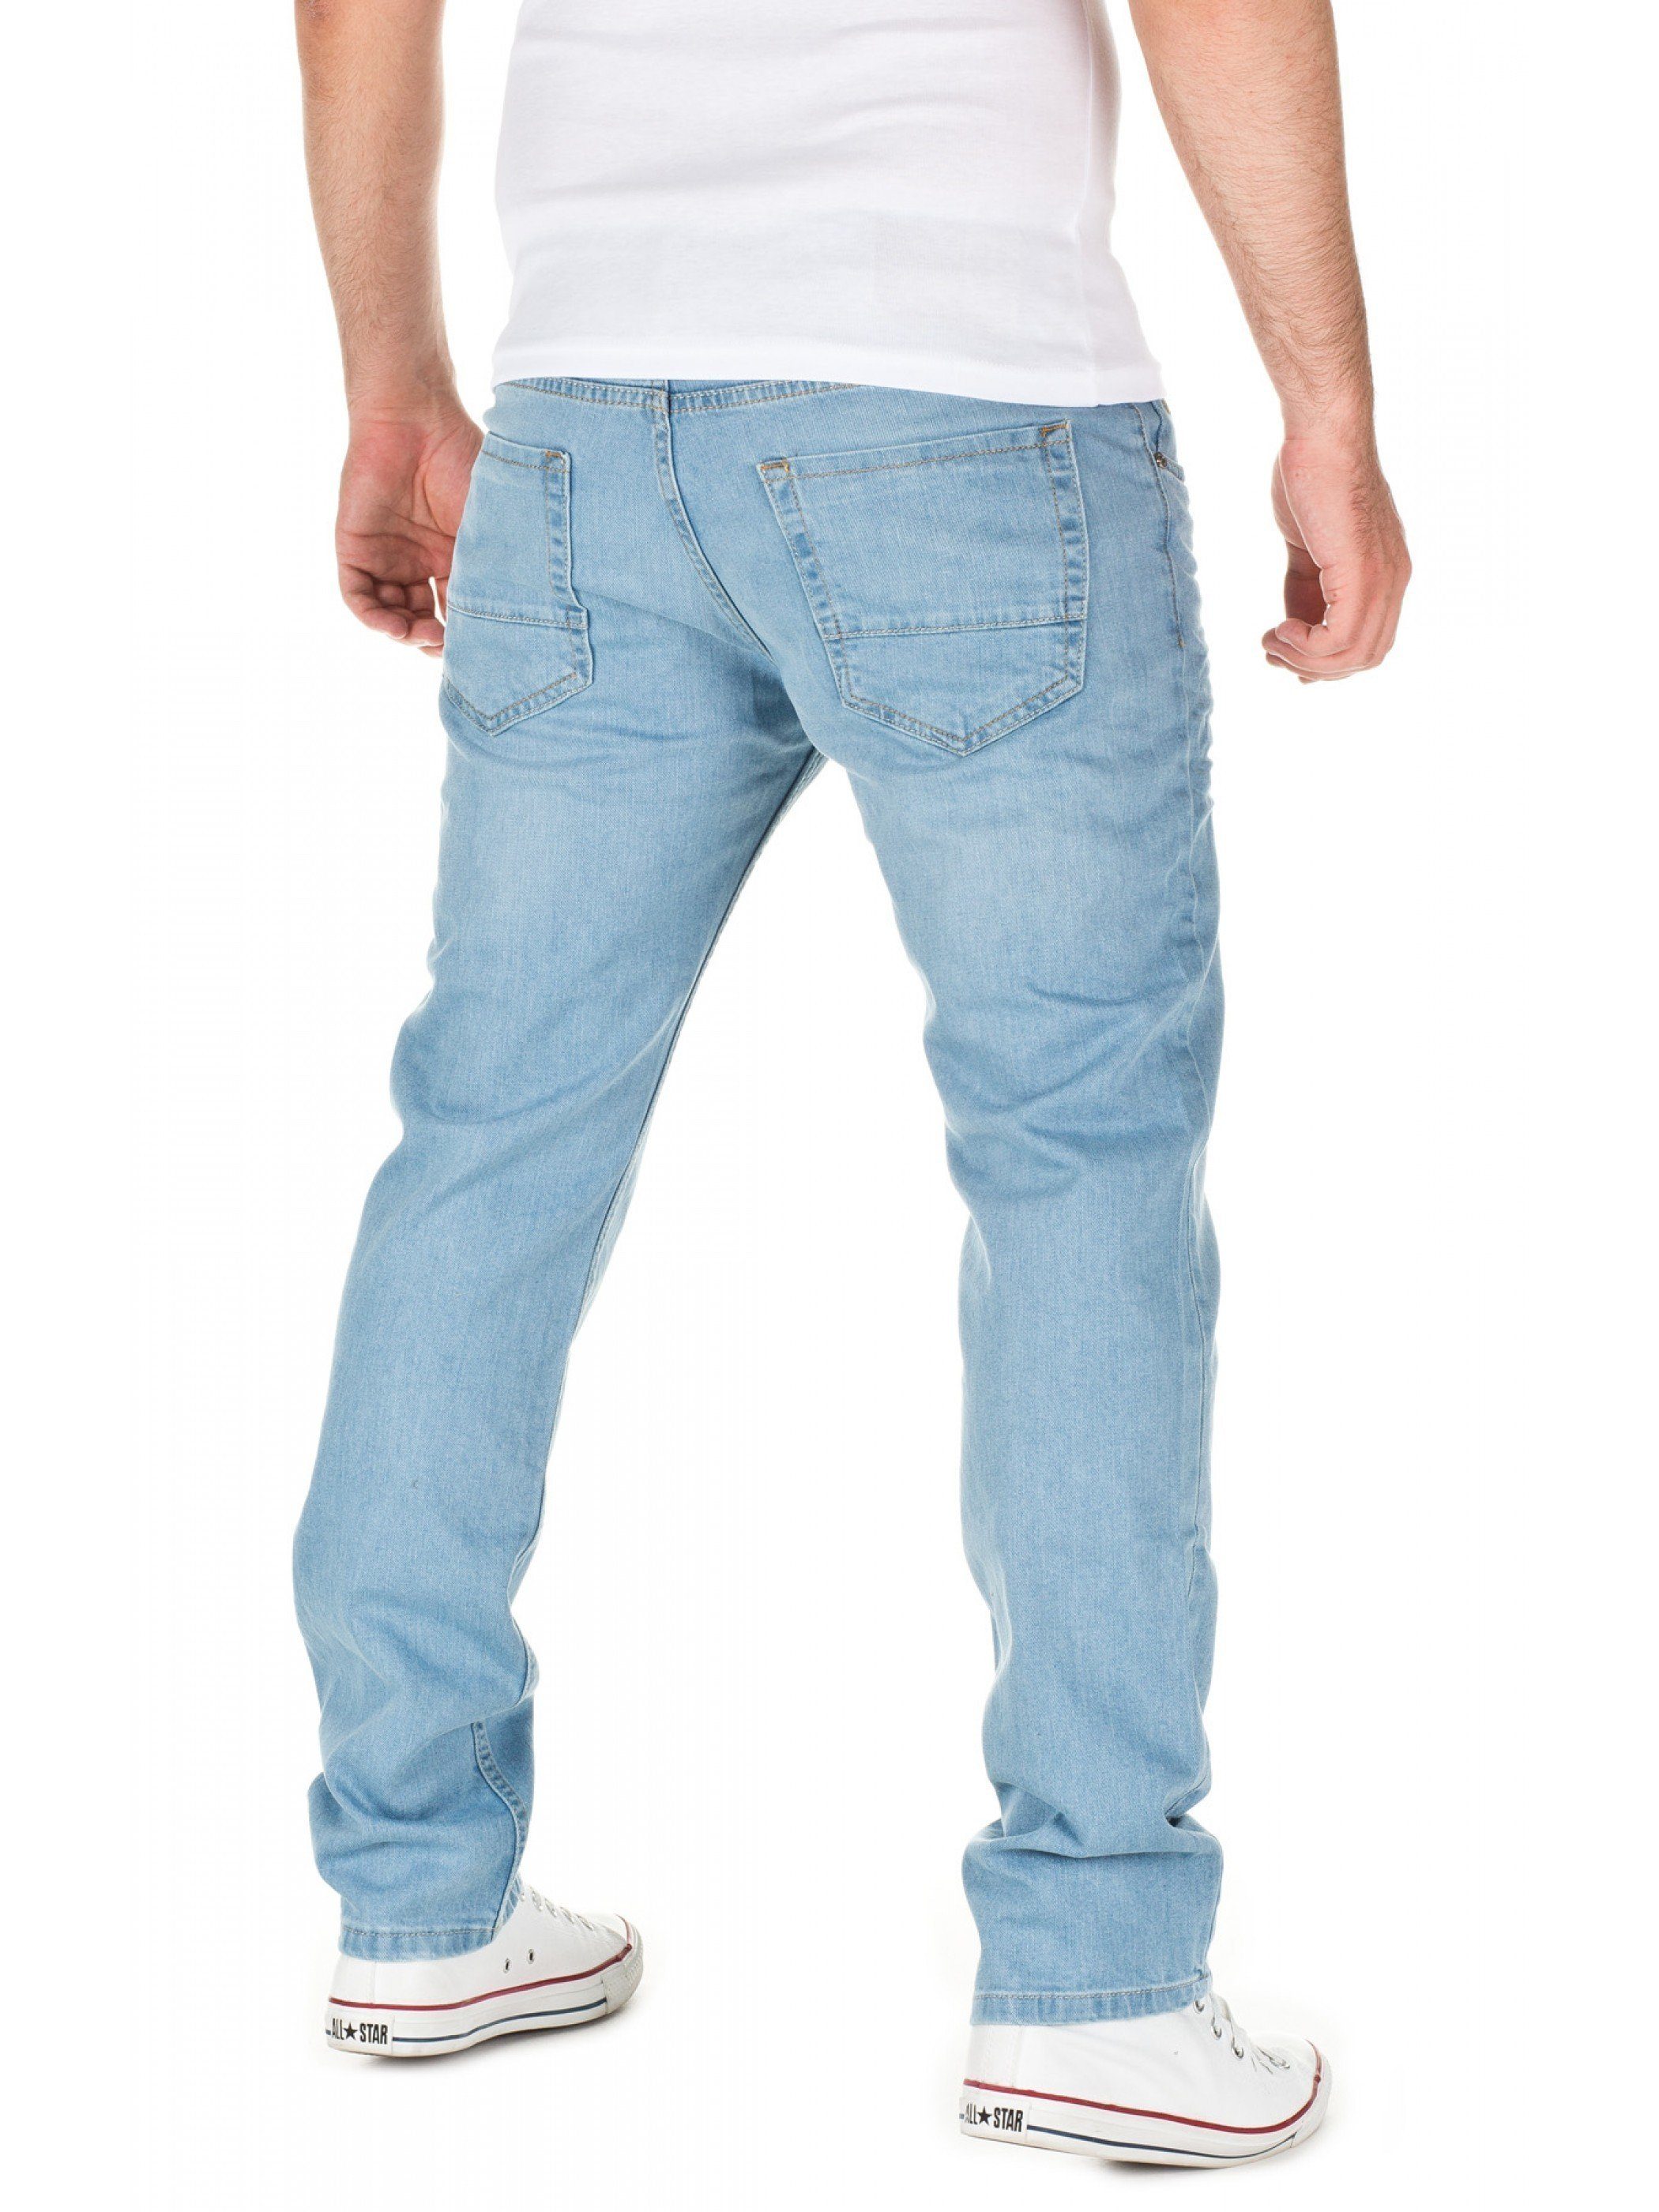 411) WOTEGA Jeans Blau Slim-fit-Jeans Travis (blue denim